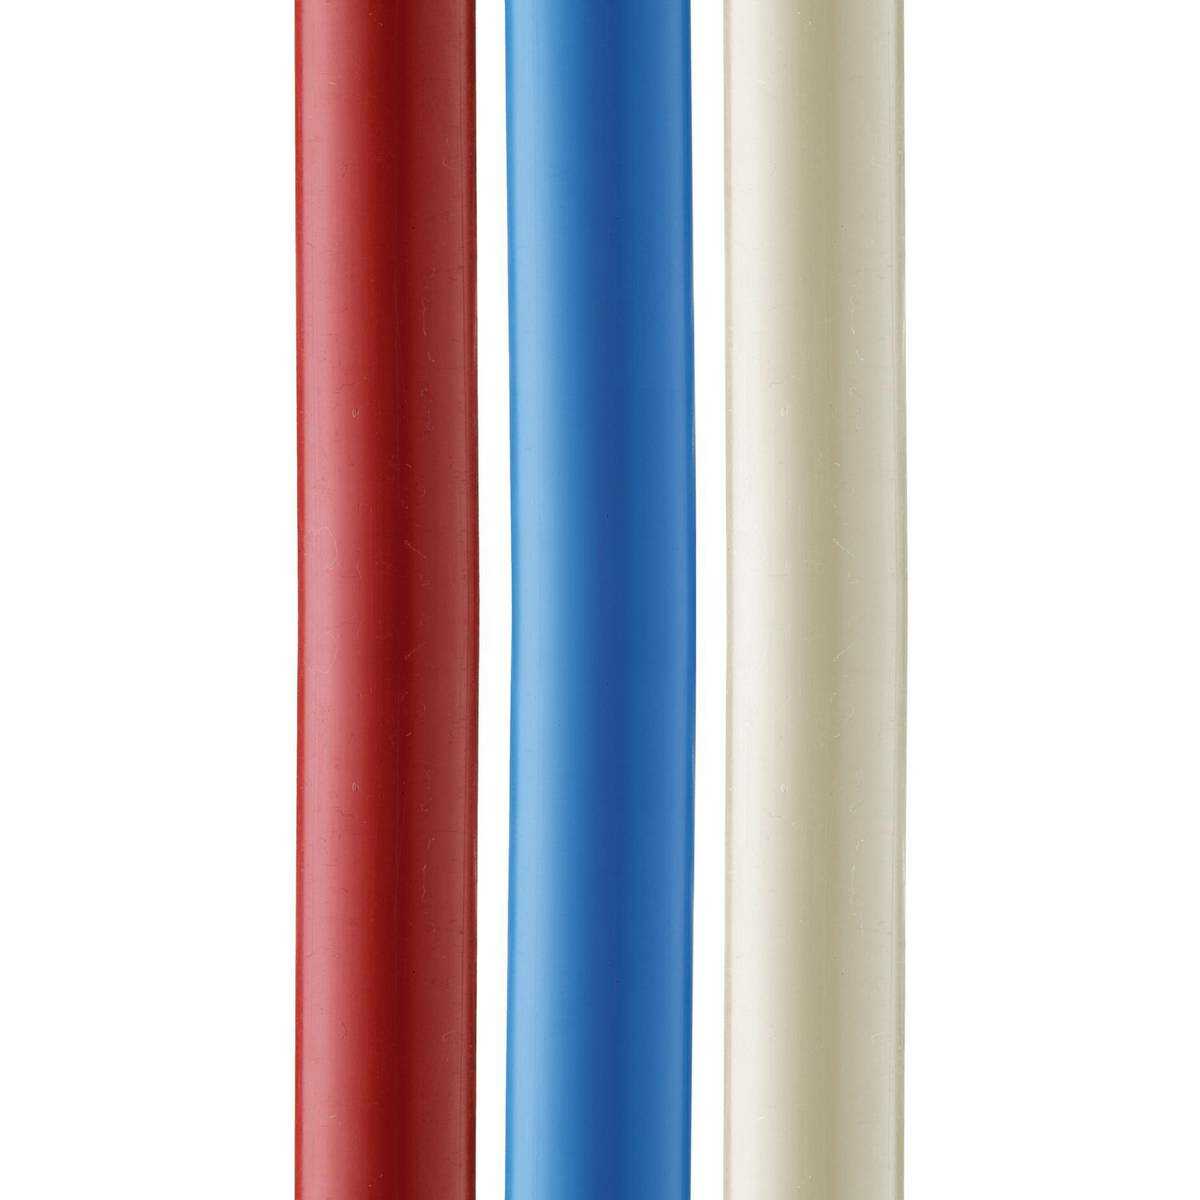 Tubes PE Réticulé d=12mm e=1,1mm, Rouge, Long. 200m, certif. NF EN ISO 15875